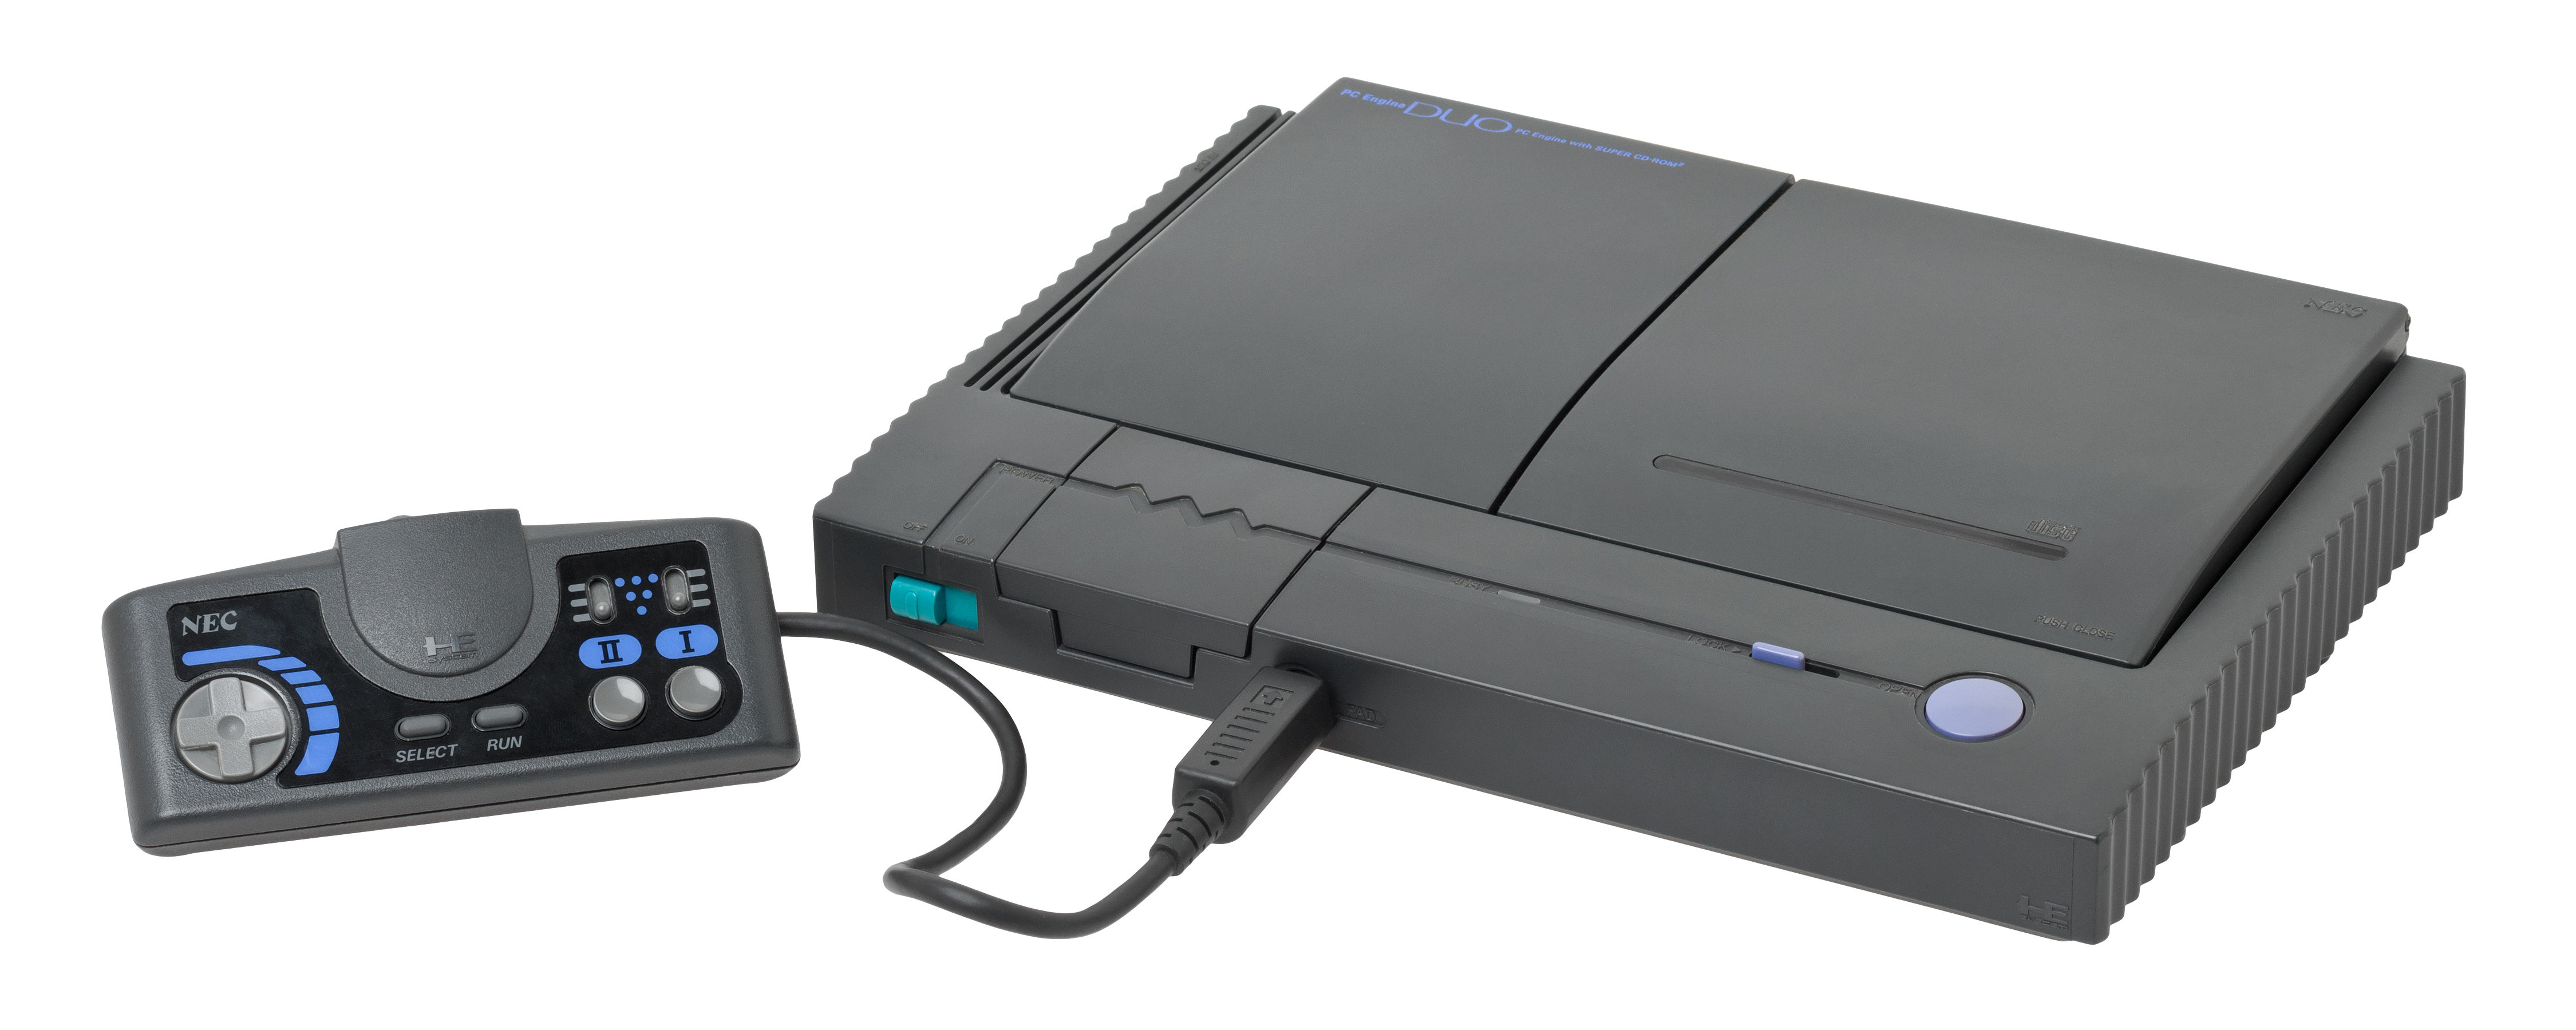 NEC「PC Engine」主機迎接問世35 周年開啟光碟遊戲時代的經典機種- 巴